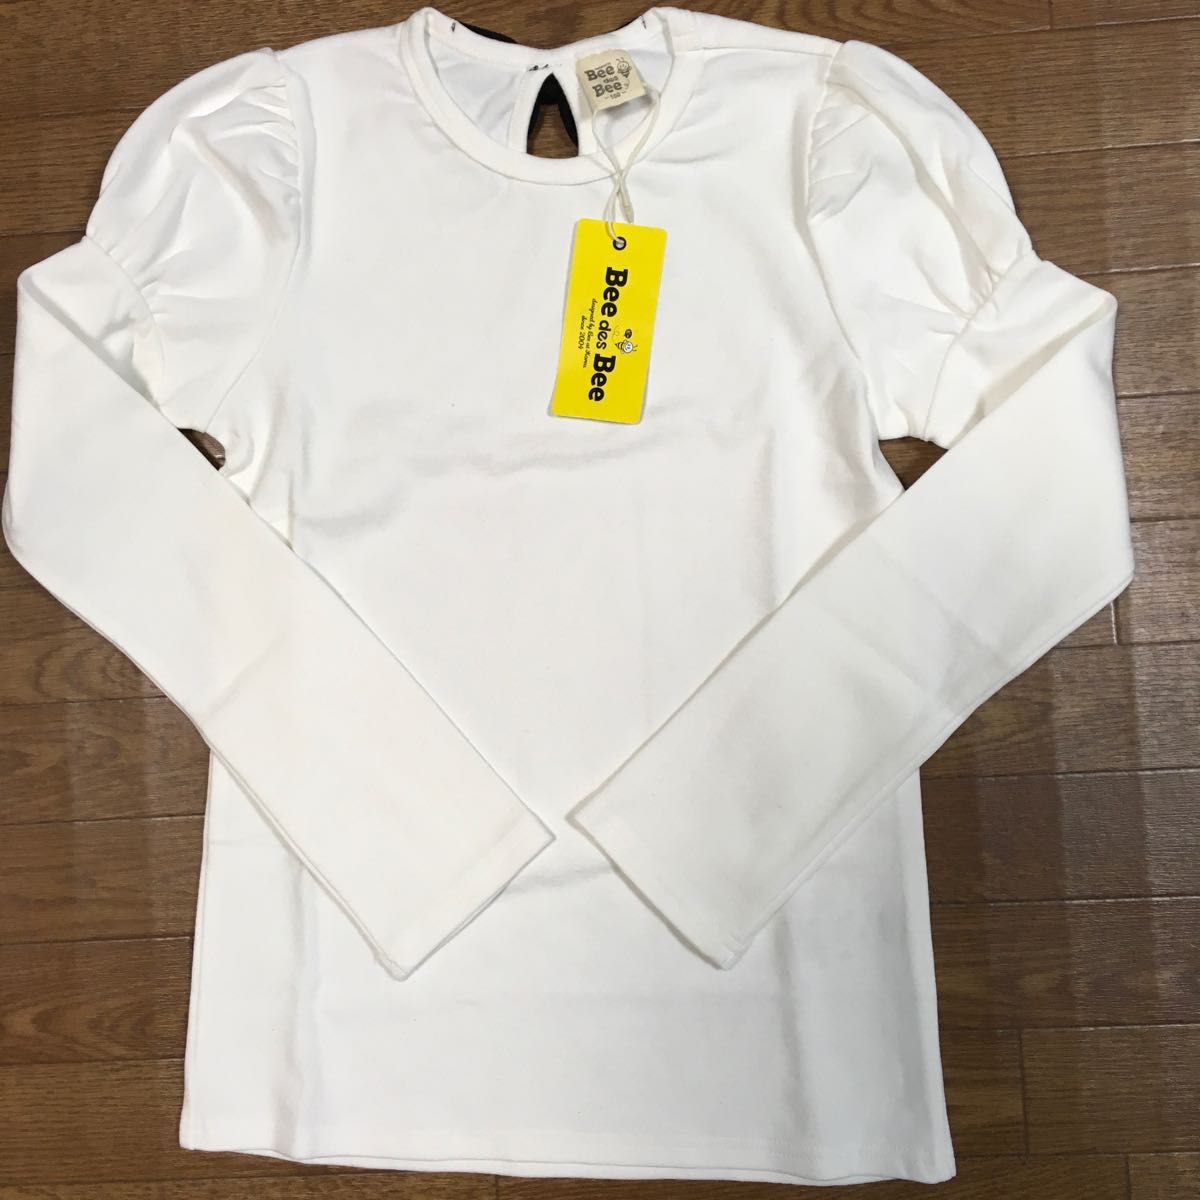 【未使用 タグ付き】Bee des Bee ビーデスビー 長袖Tシャツ 150 白 コットン